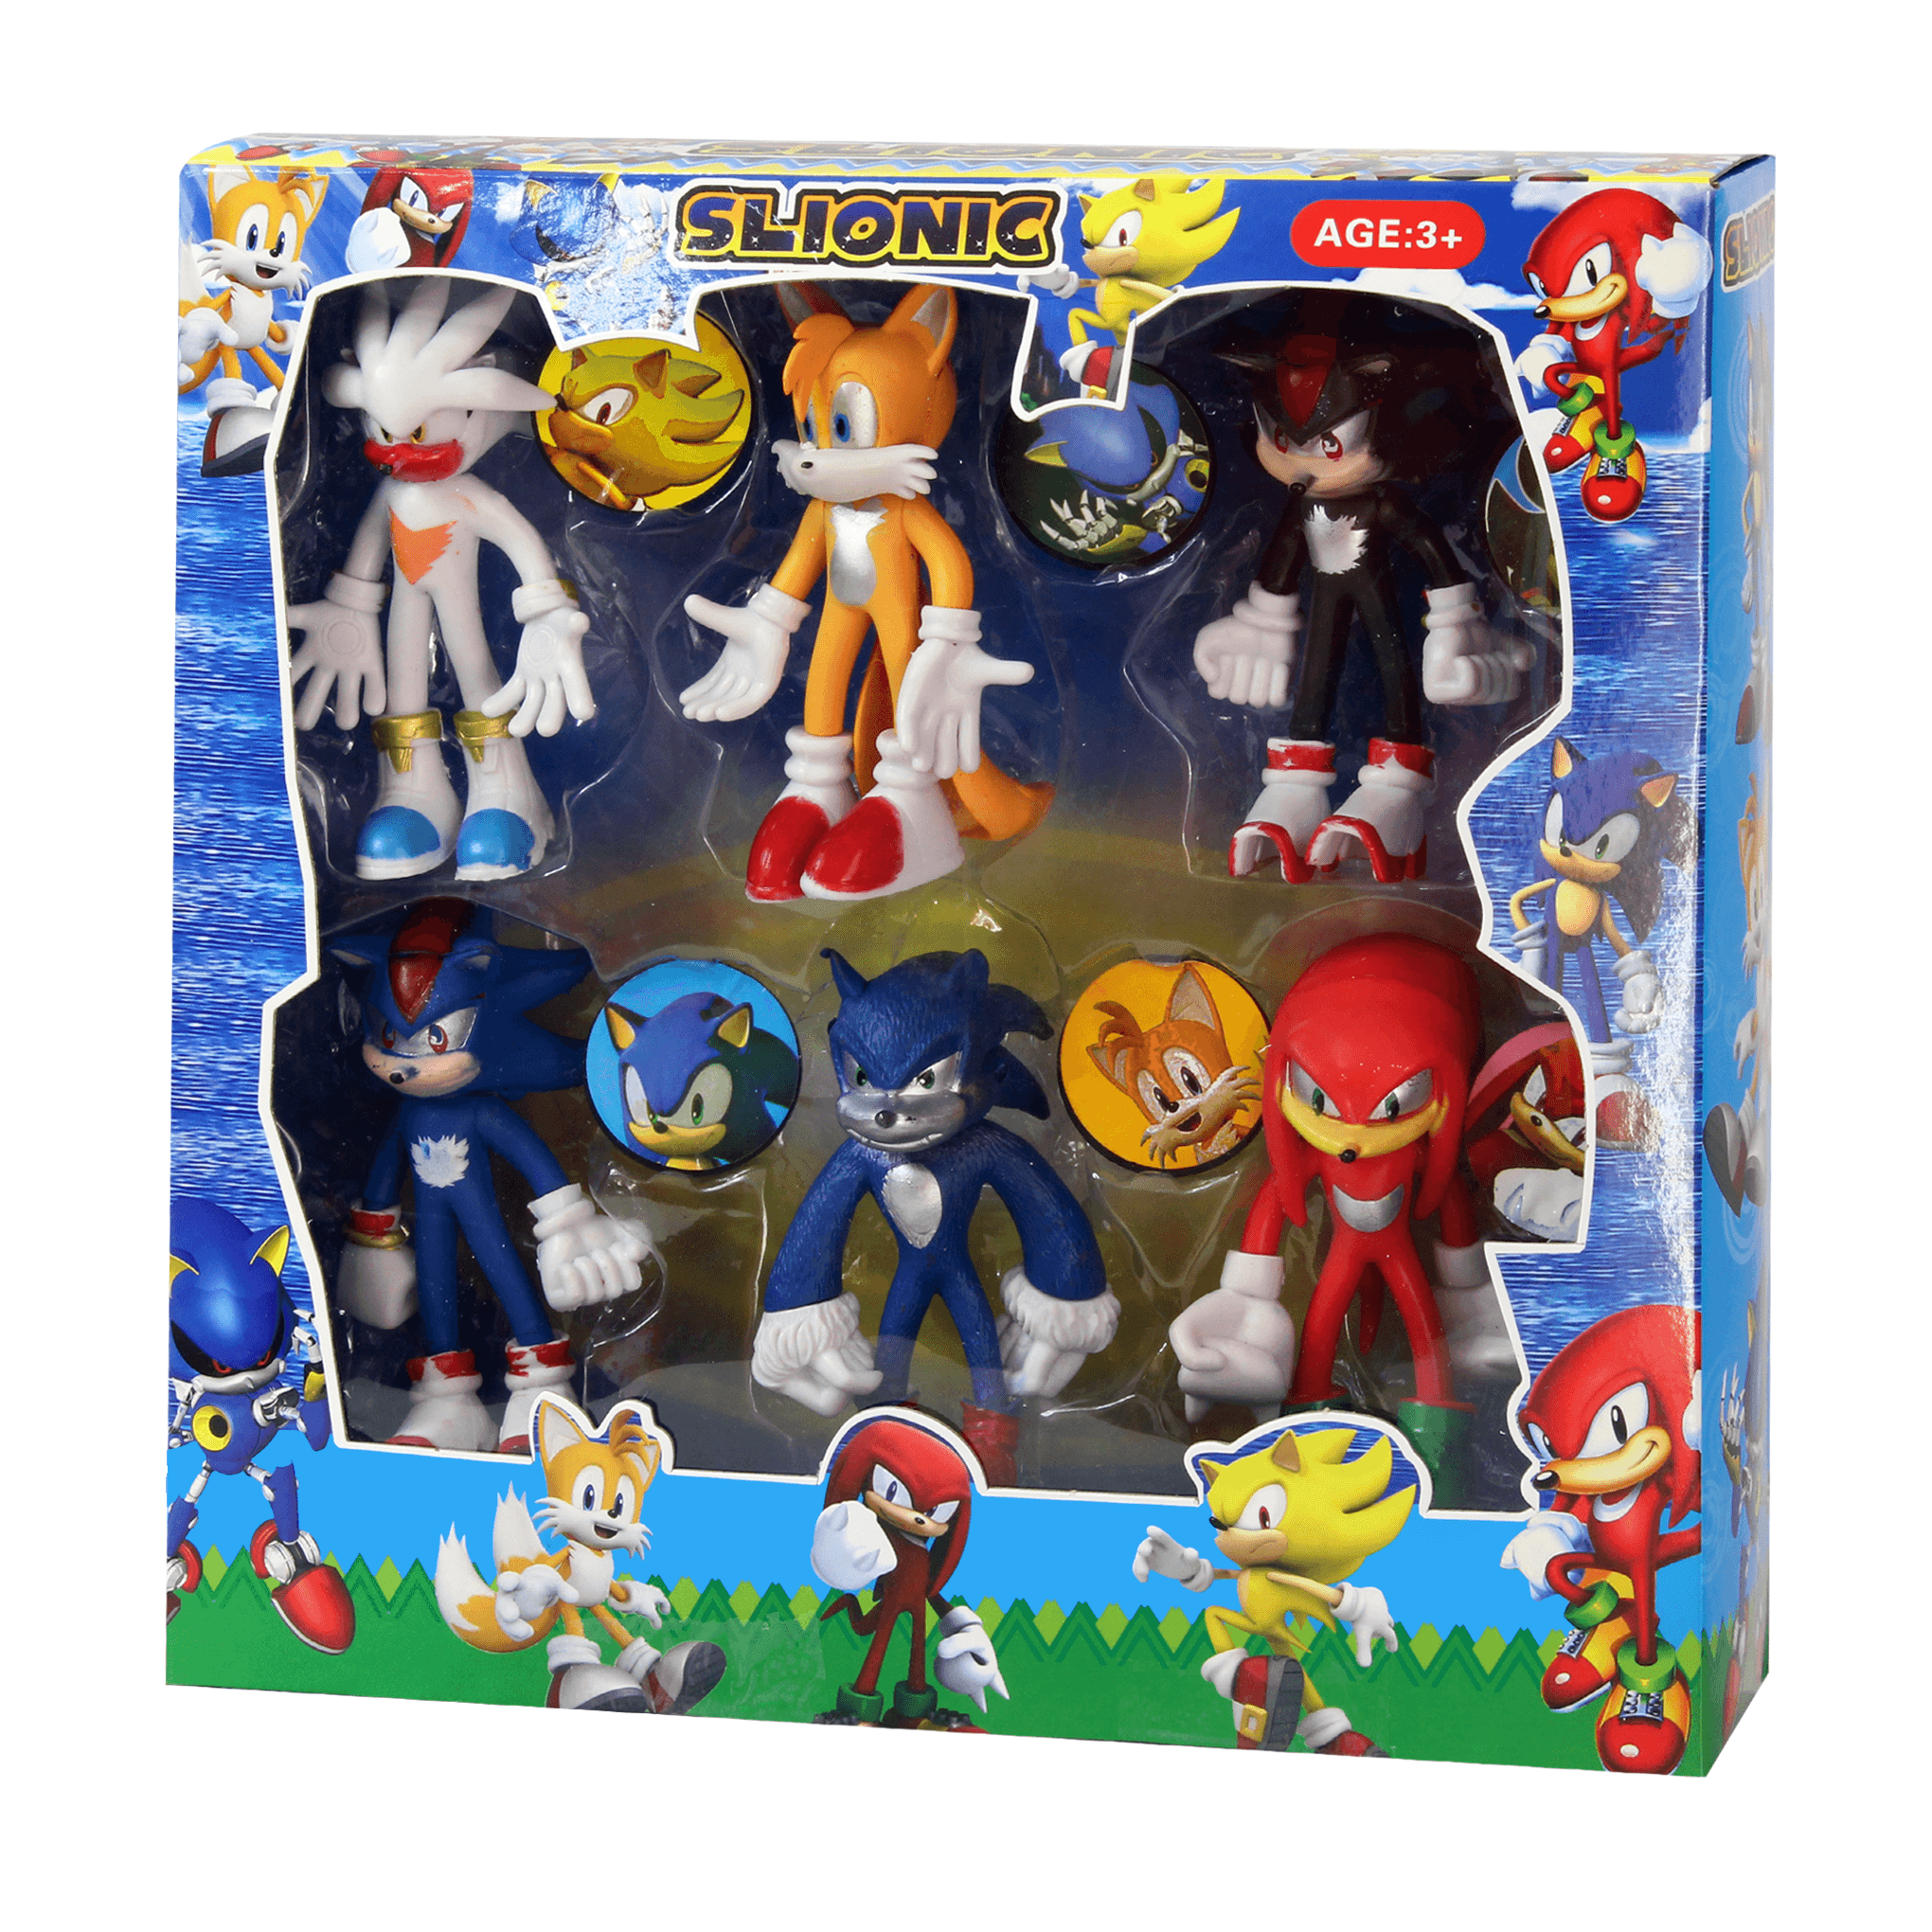 6 in 1 Sonic Action Figures Set Model C